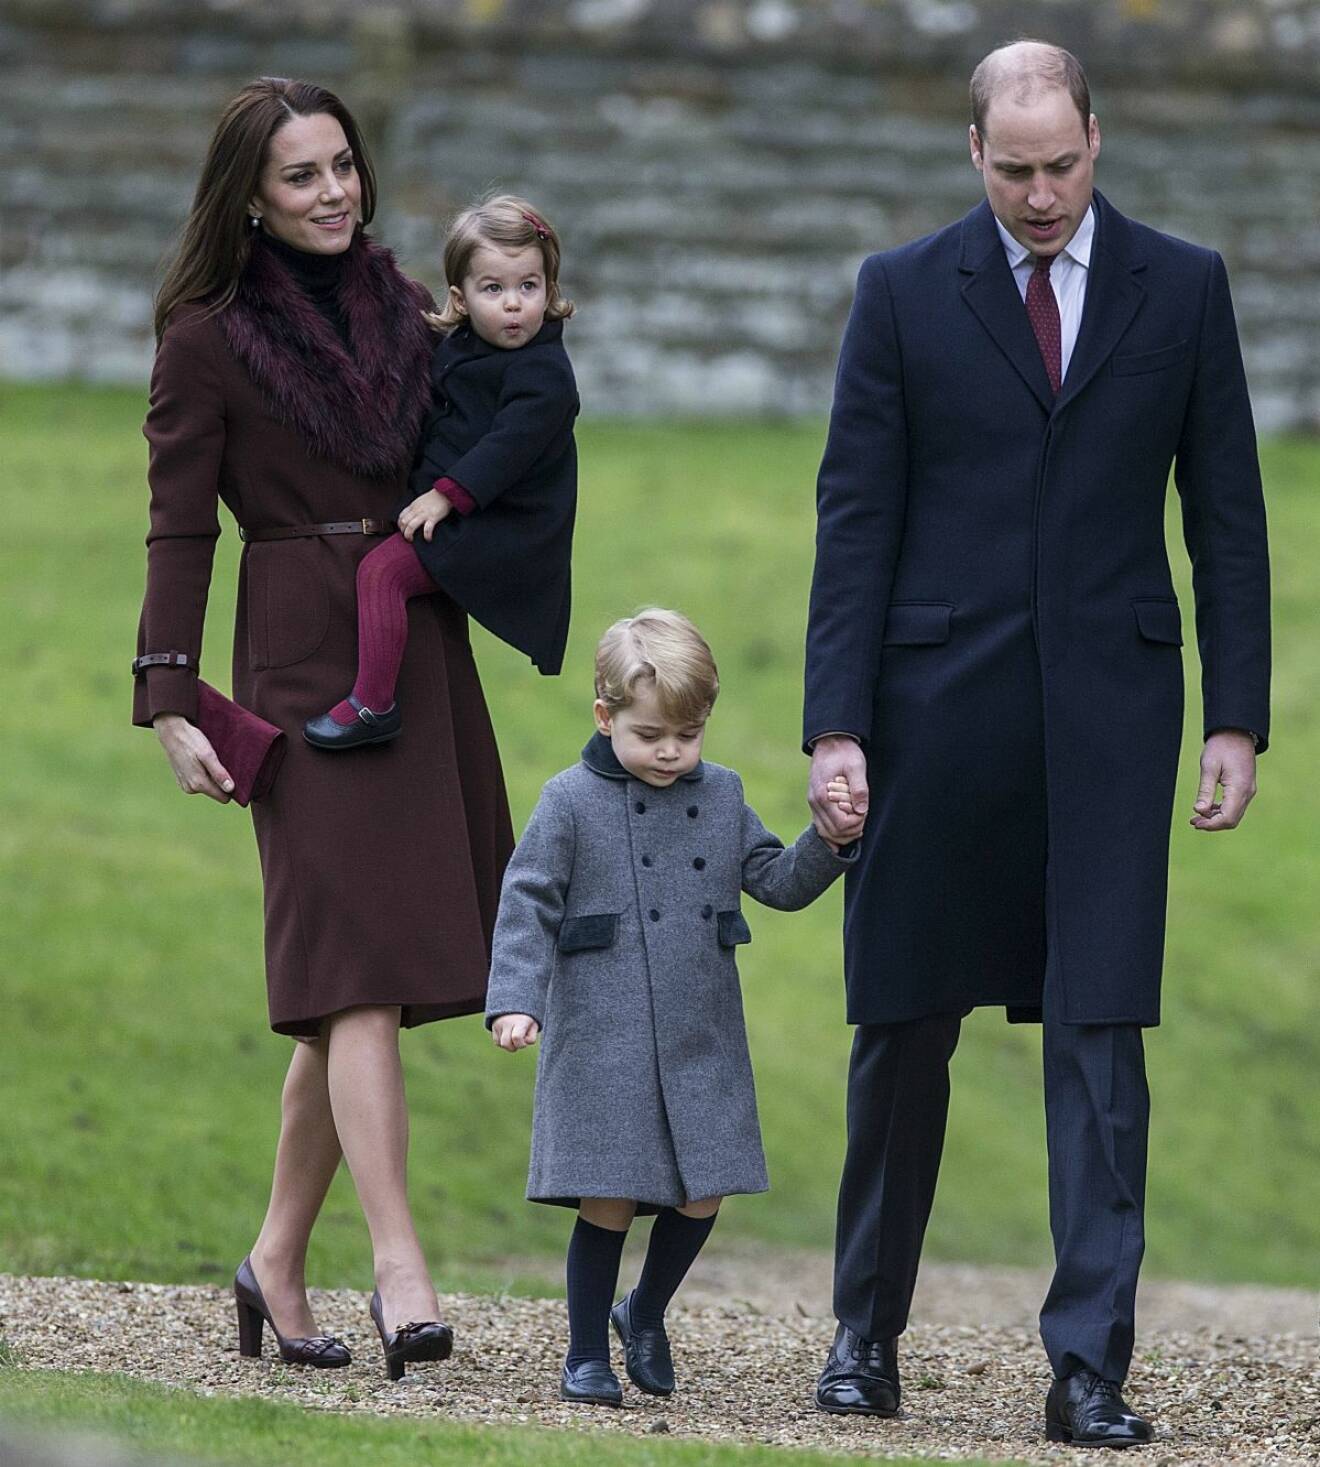 Hertiginnan Kate, prinsessan Charlotte, prins George och prins William påväg till kyrkan för en julgudstjänst. 